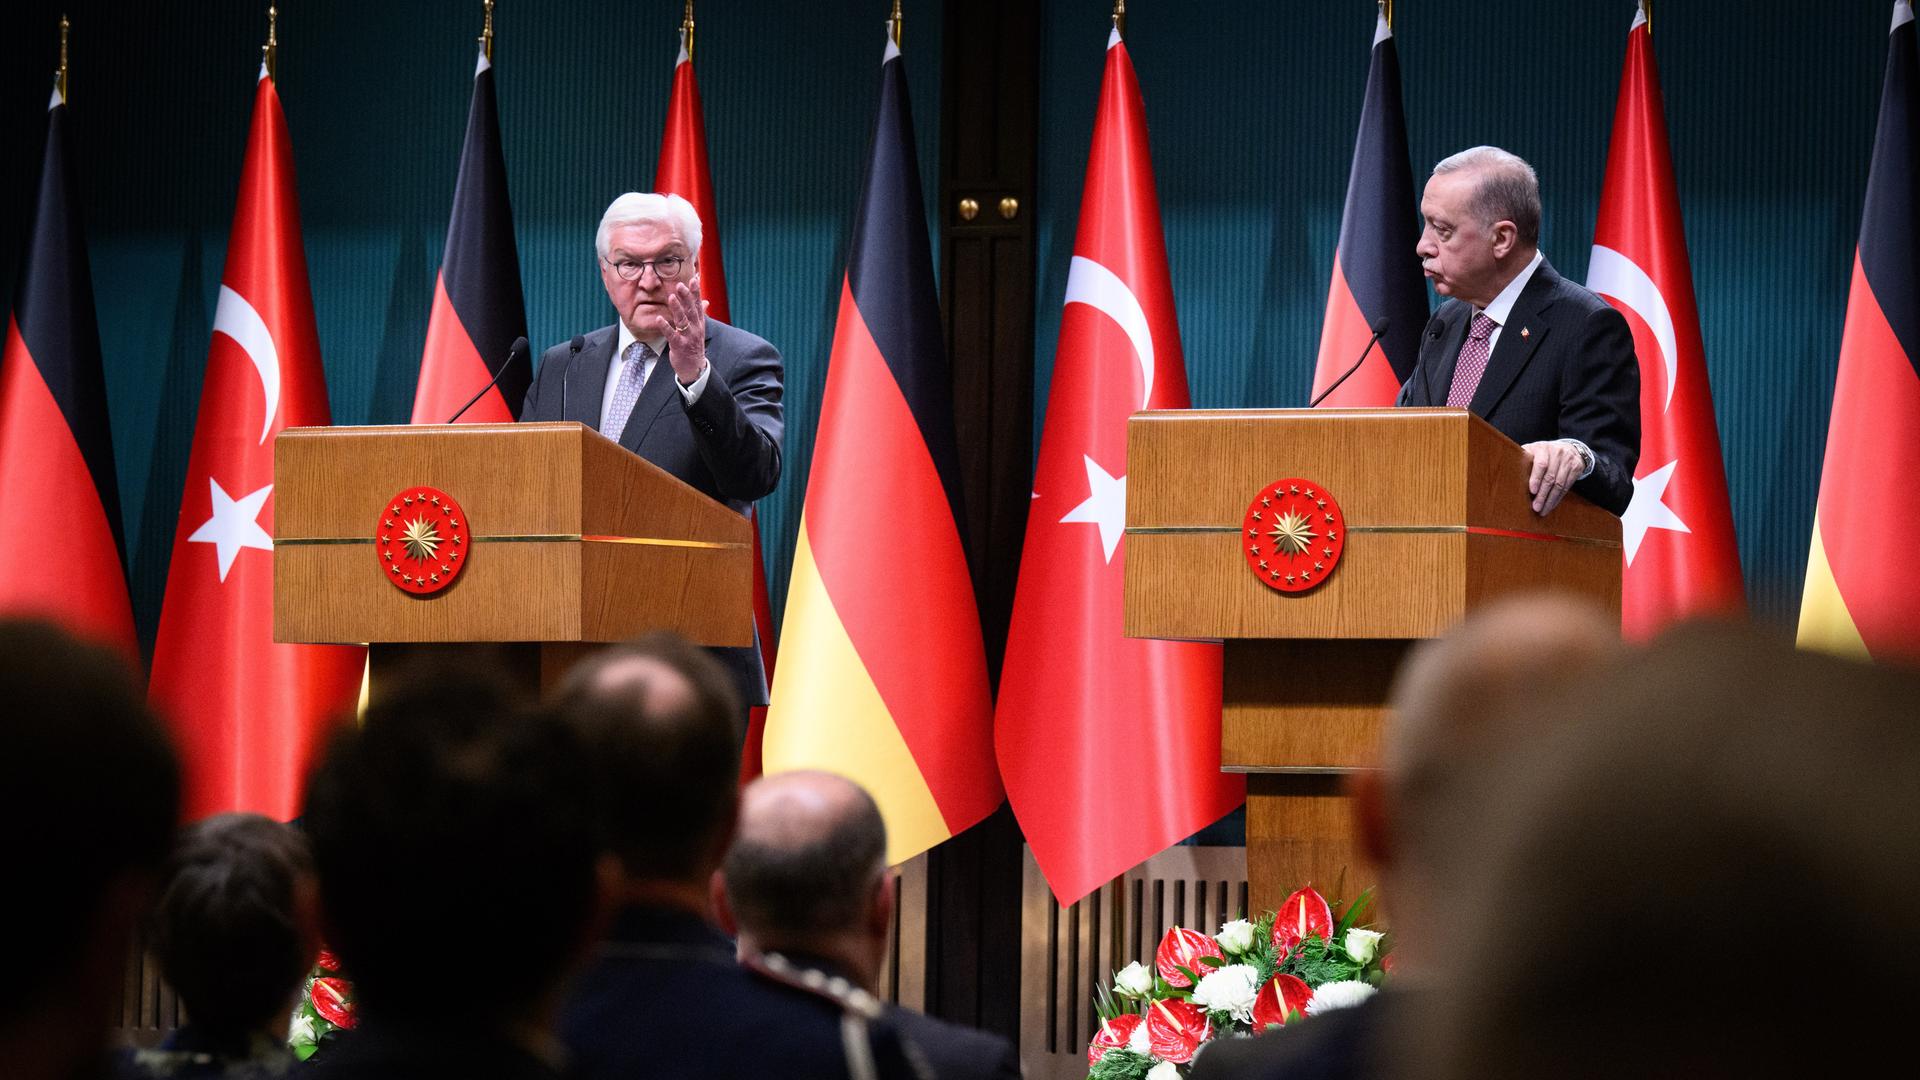 Bundespräsident Frank-Walter Steinmeier und Recep Tayyip Erdogan, Präsident der Türkei, stehen während einer Pressekonferenz an Rednerpulten vor deutschen und türkischen Nationalfahnen.